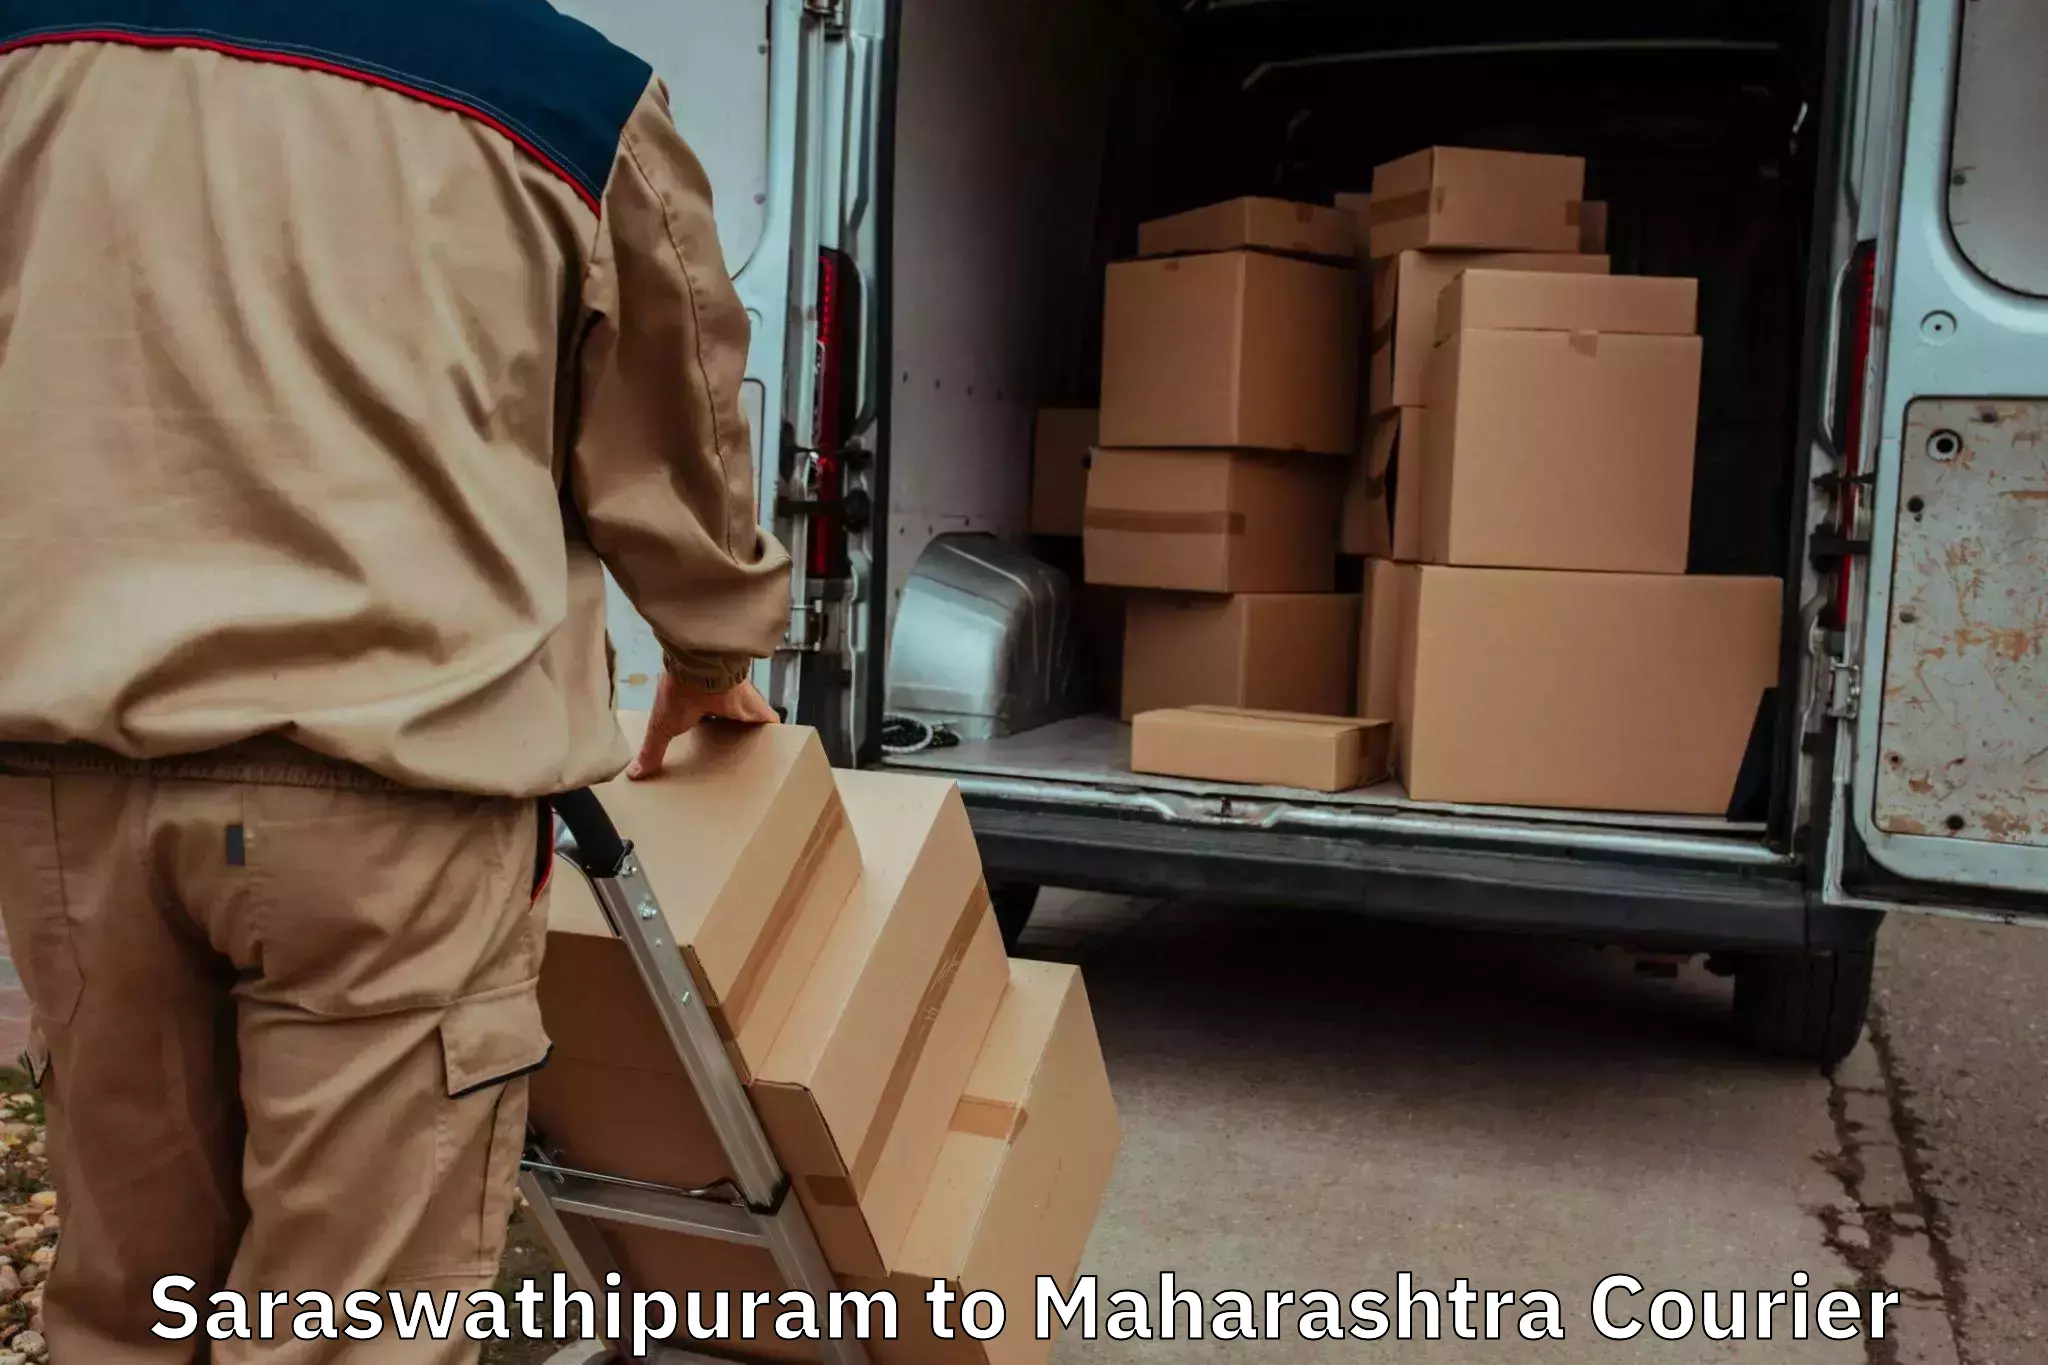 Furniture transport experts Saraswathipuram to Lonar